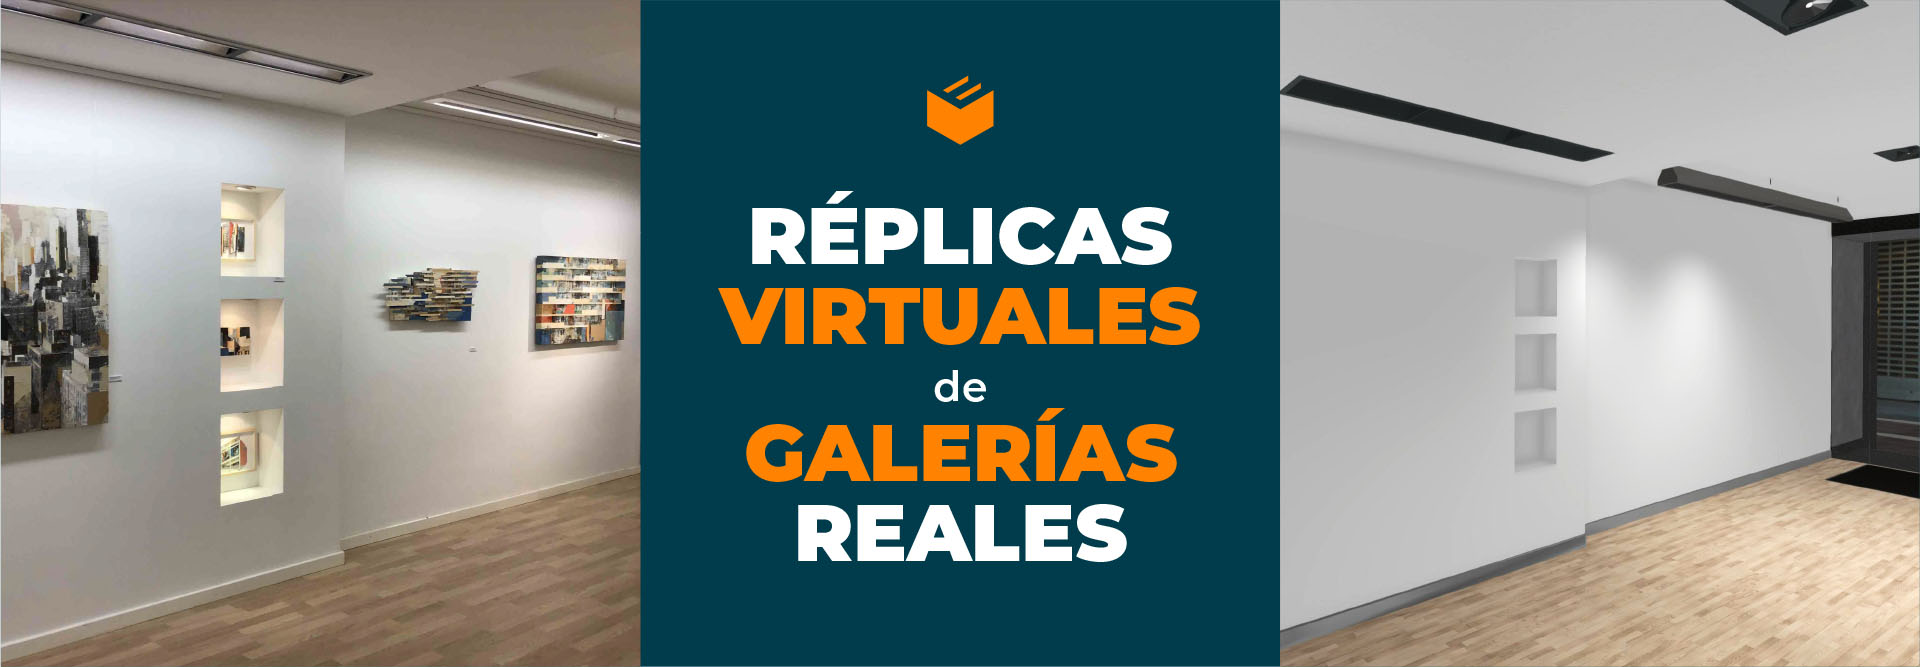 Réplicas virtuales de galerías reales